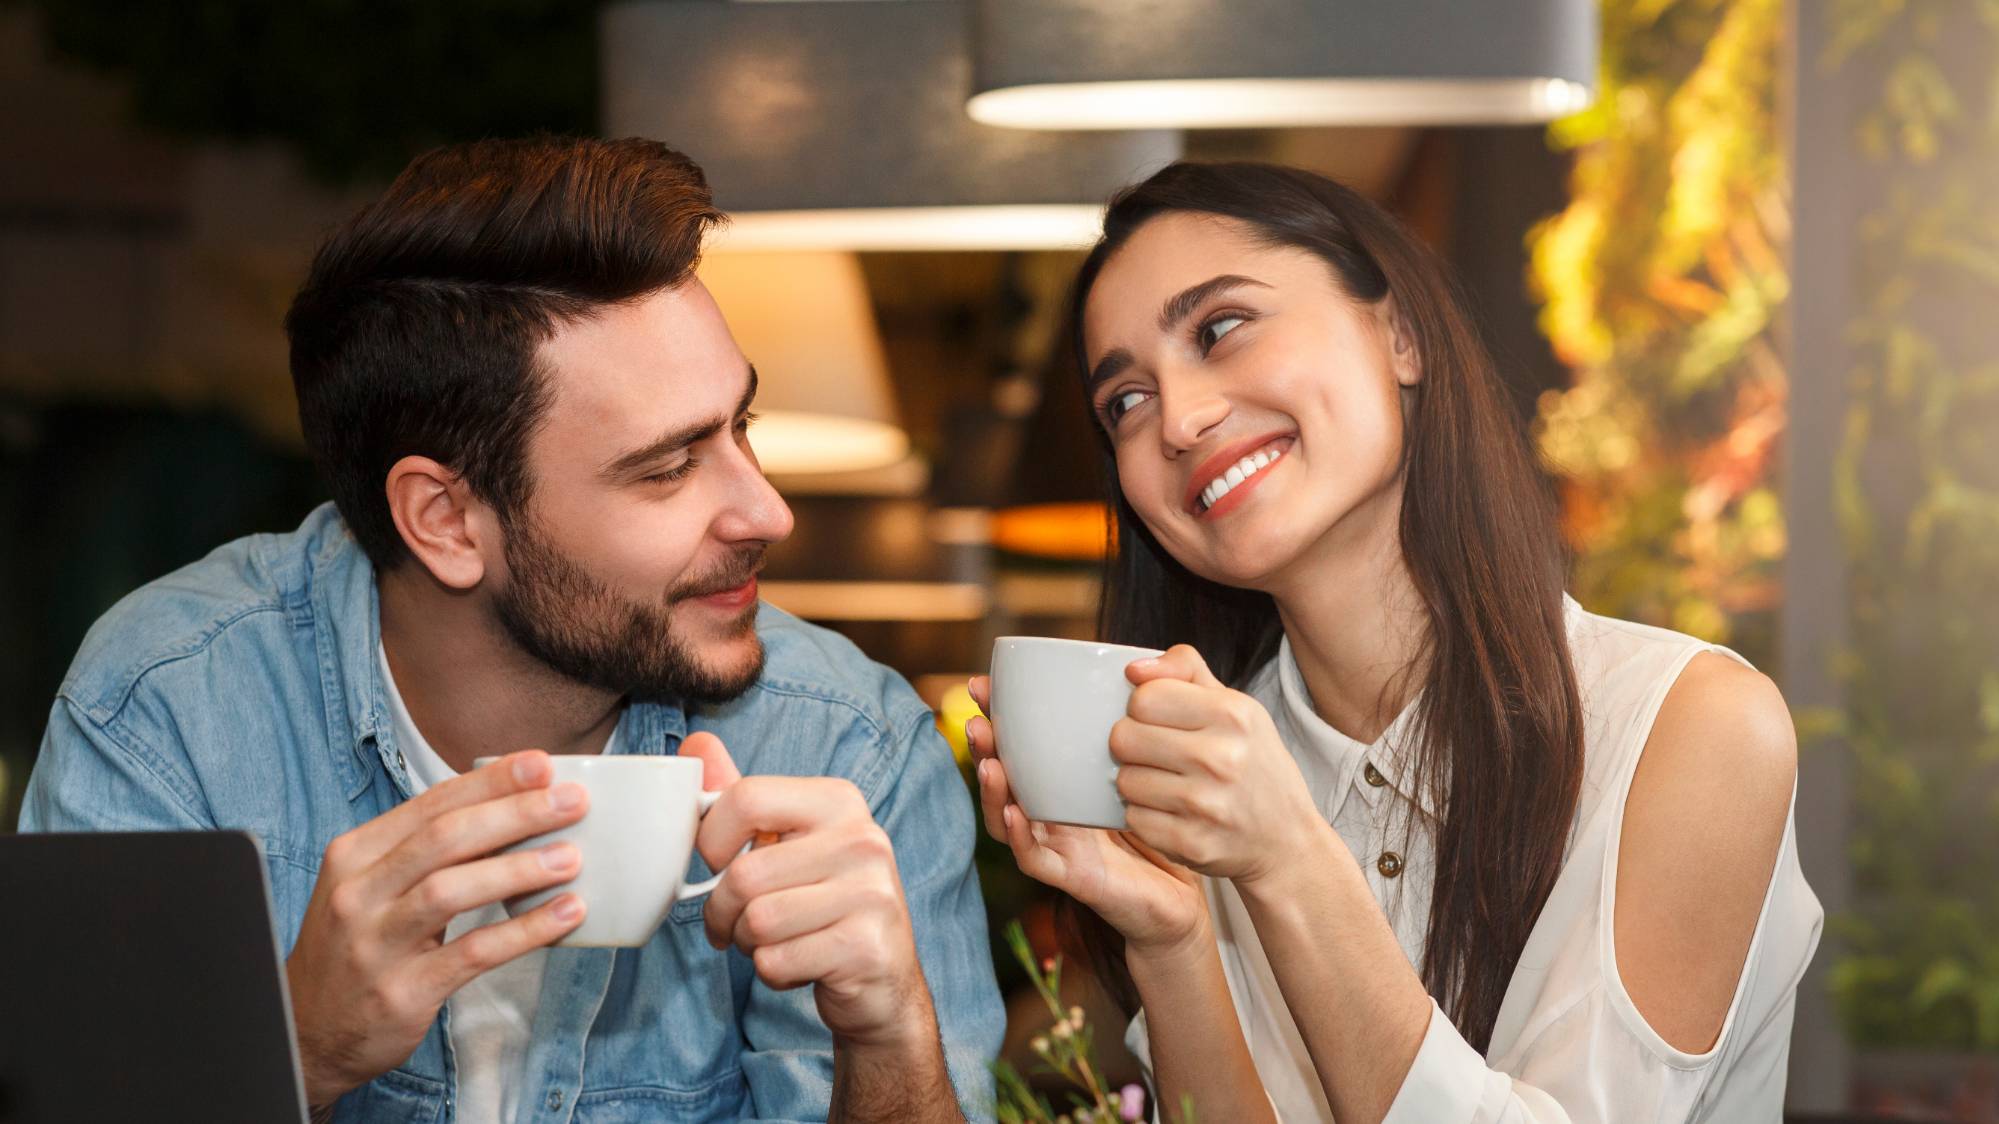 30 вопросов, которые помогут сблизиться на первых свиданиях и узнать, что за человек перед вами